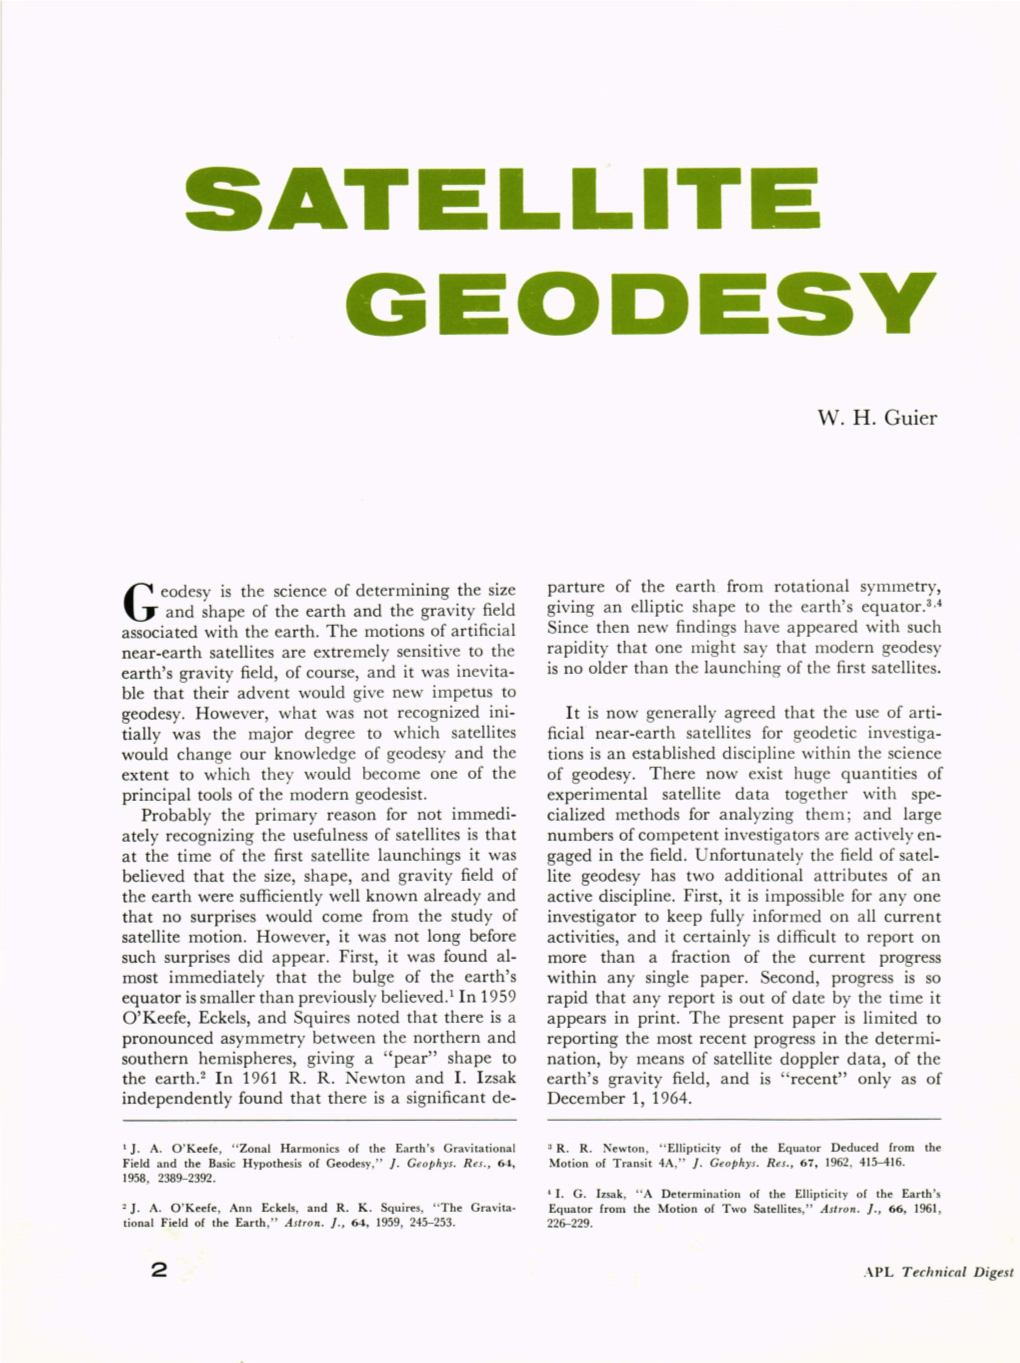 Satellite Geodesy